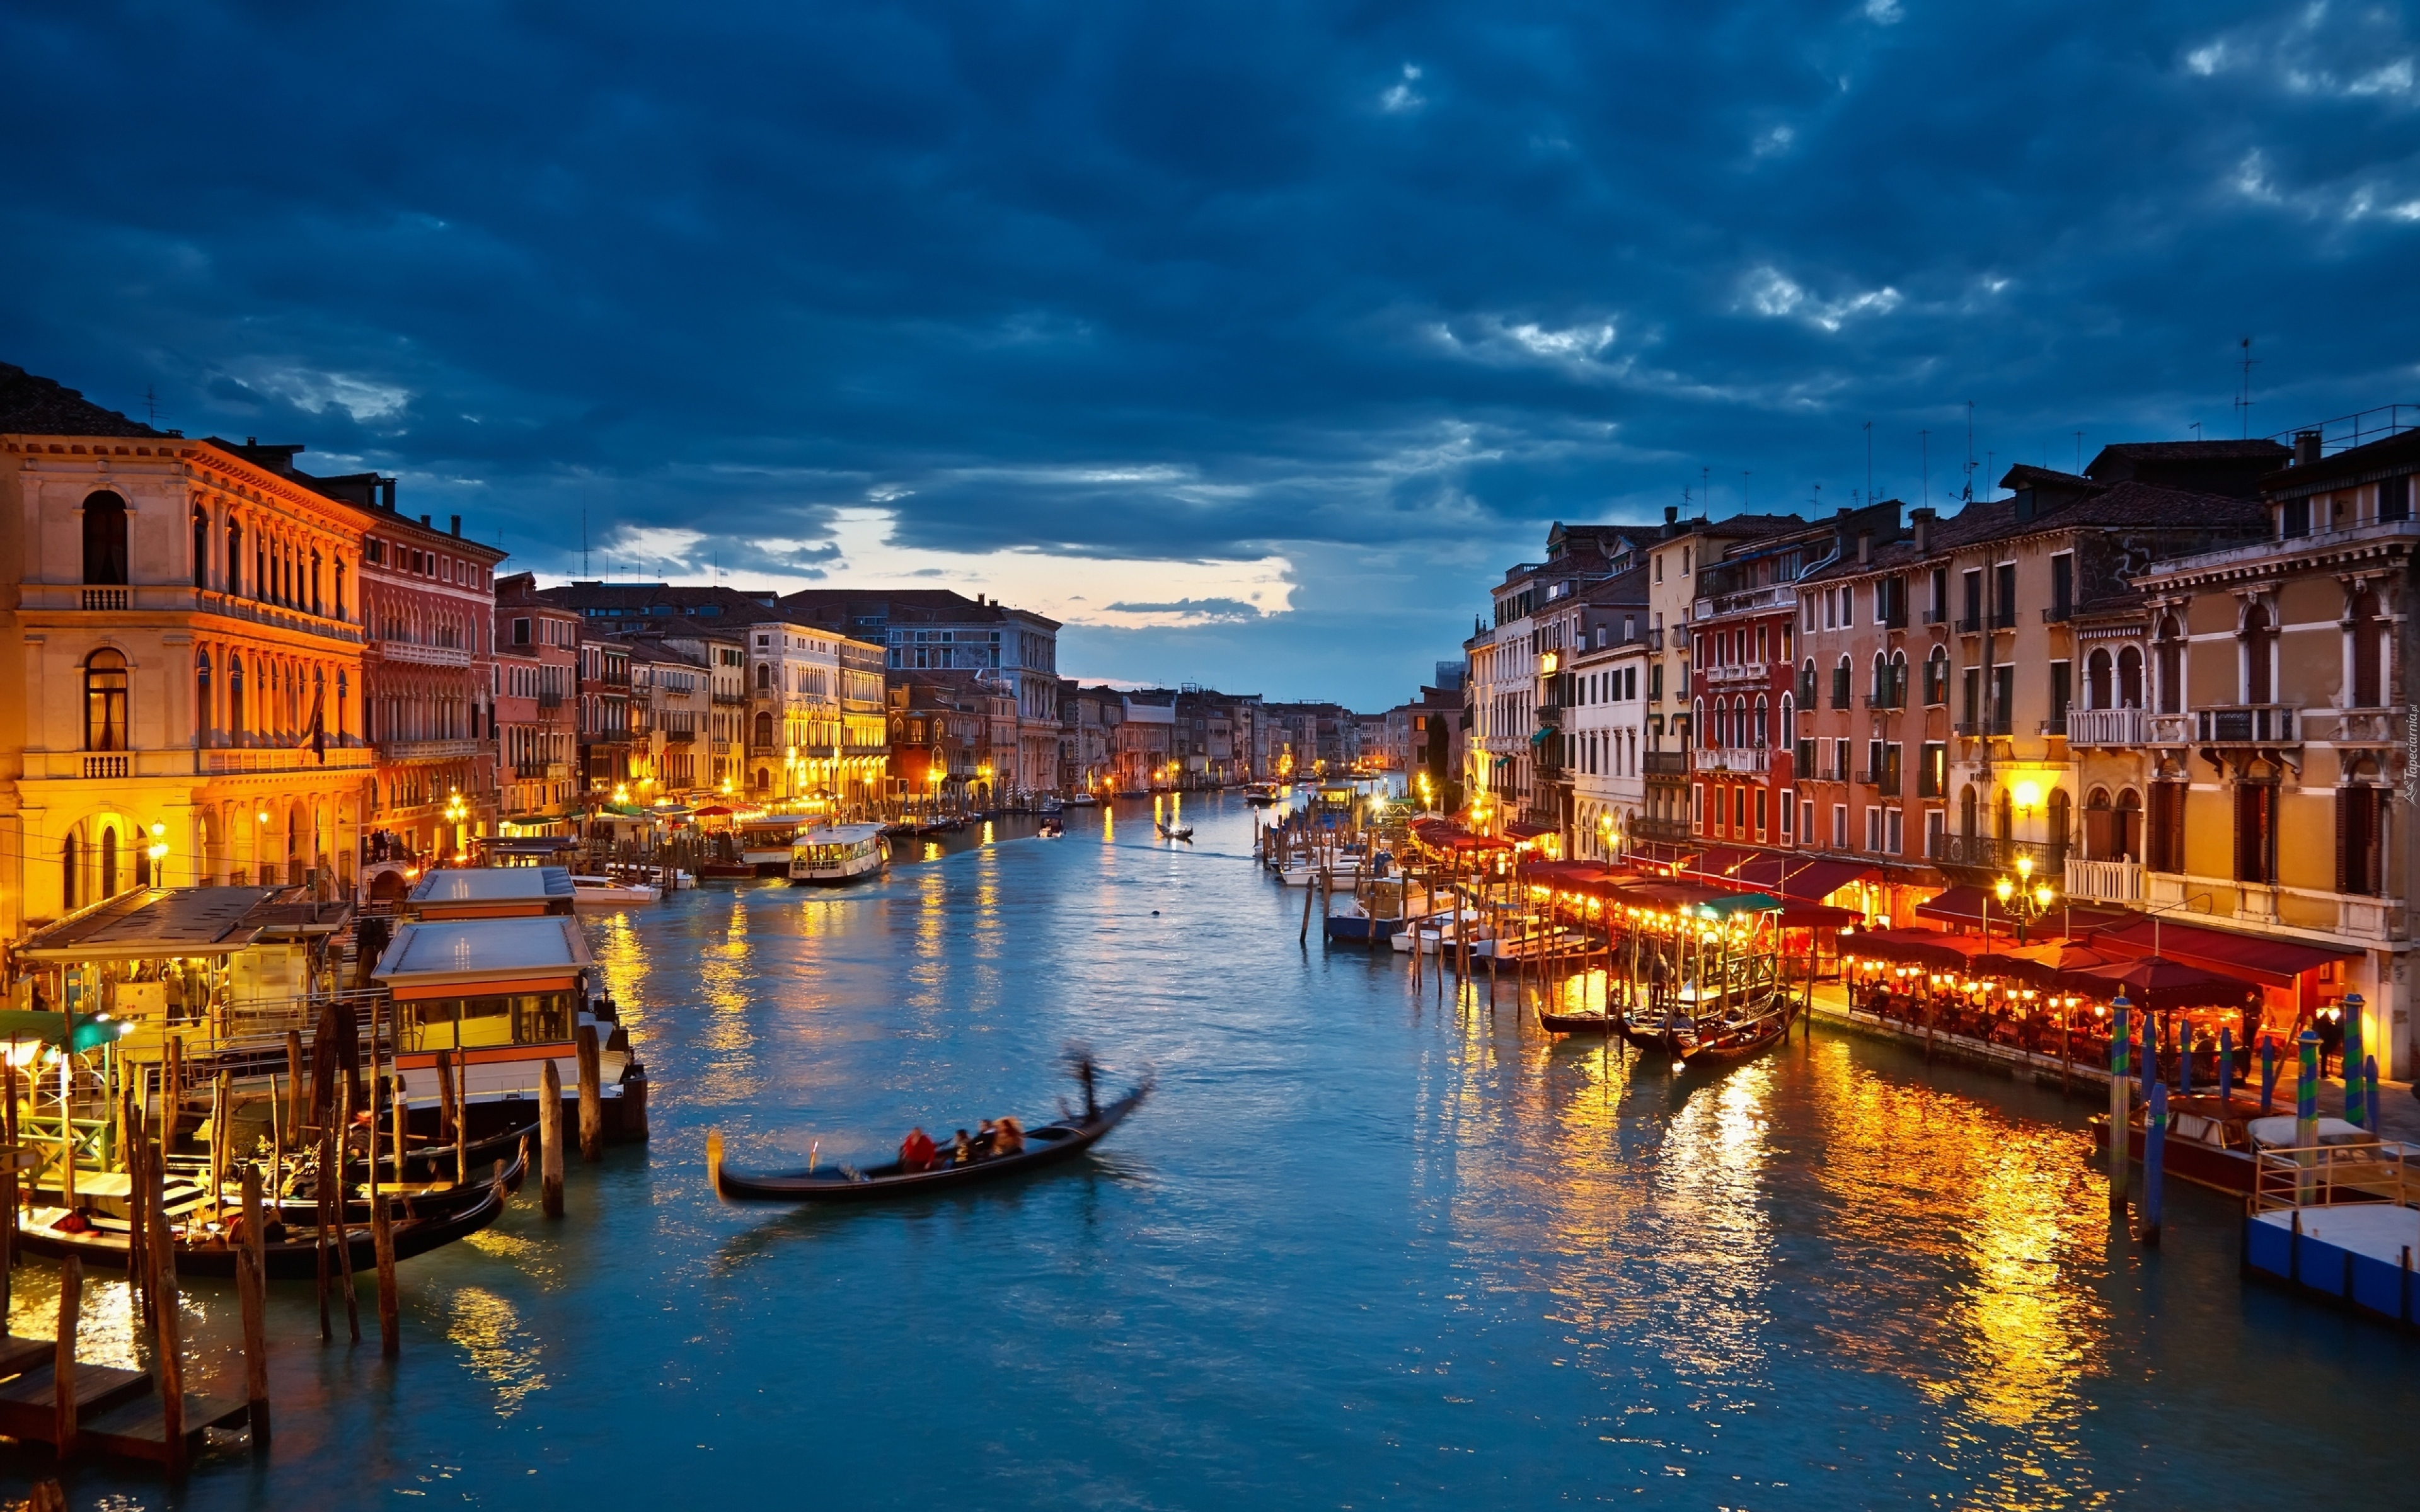 Wenecja, Gondola, Noc, Światła